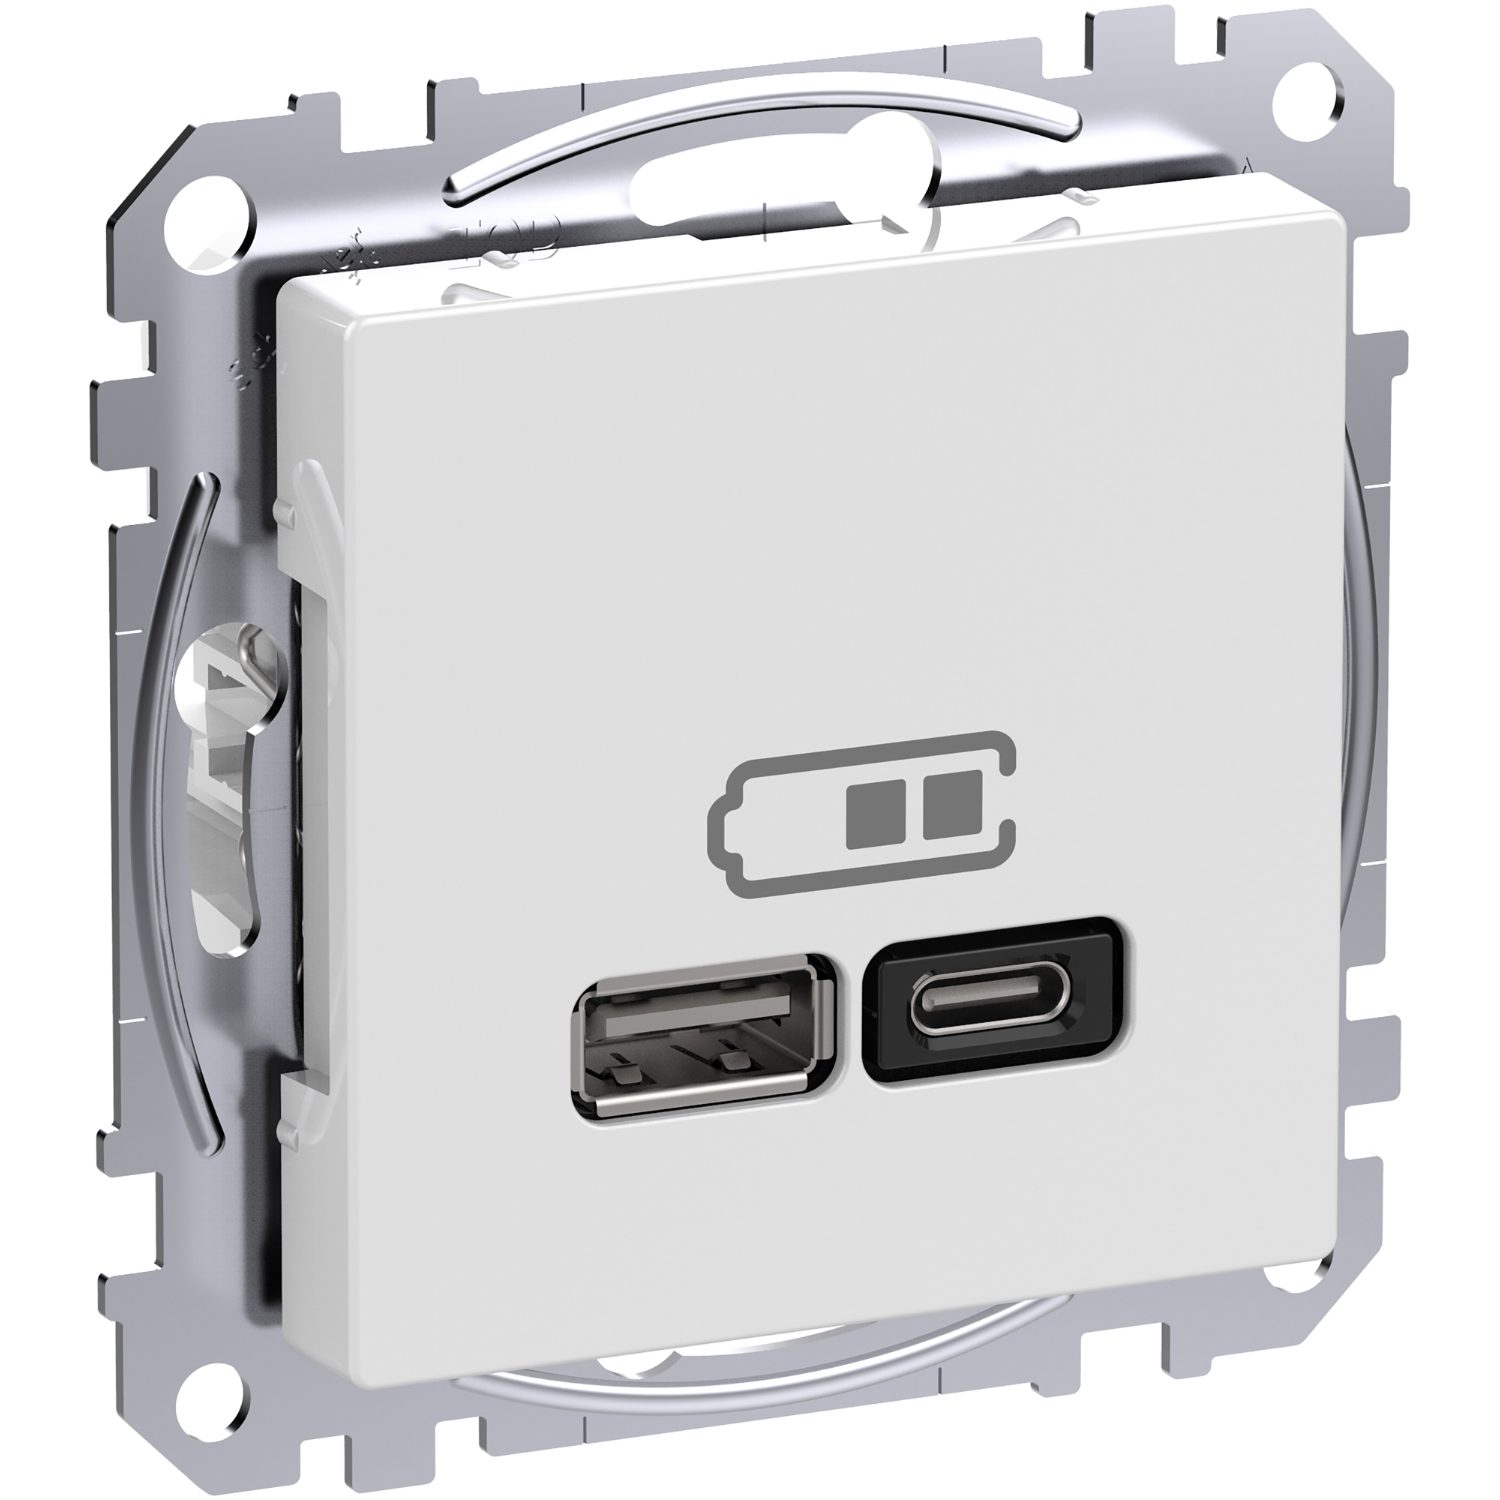 Schneider Electric i Sverige är först i Europa att lansera USB C-uttag med Power Delivery-teknik